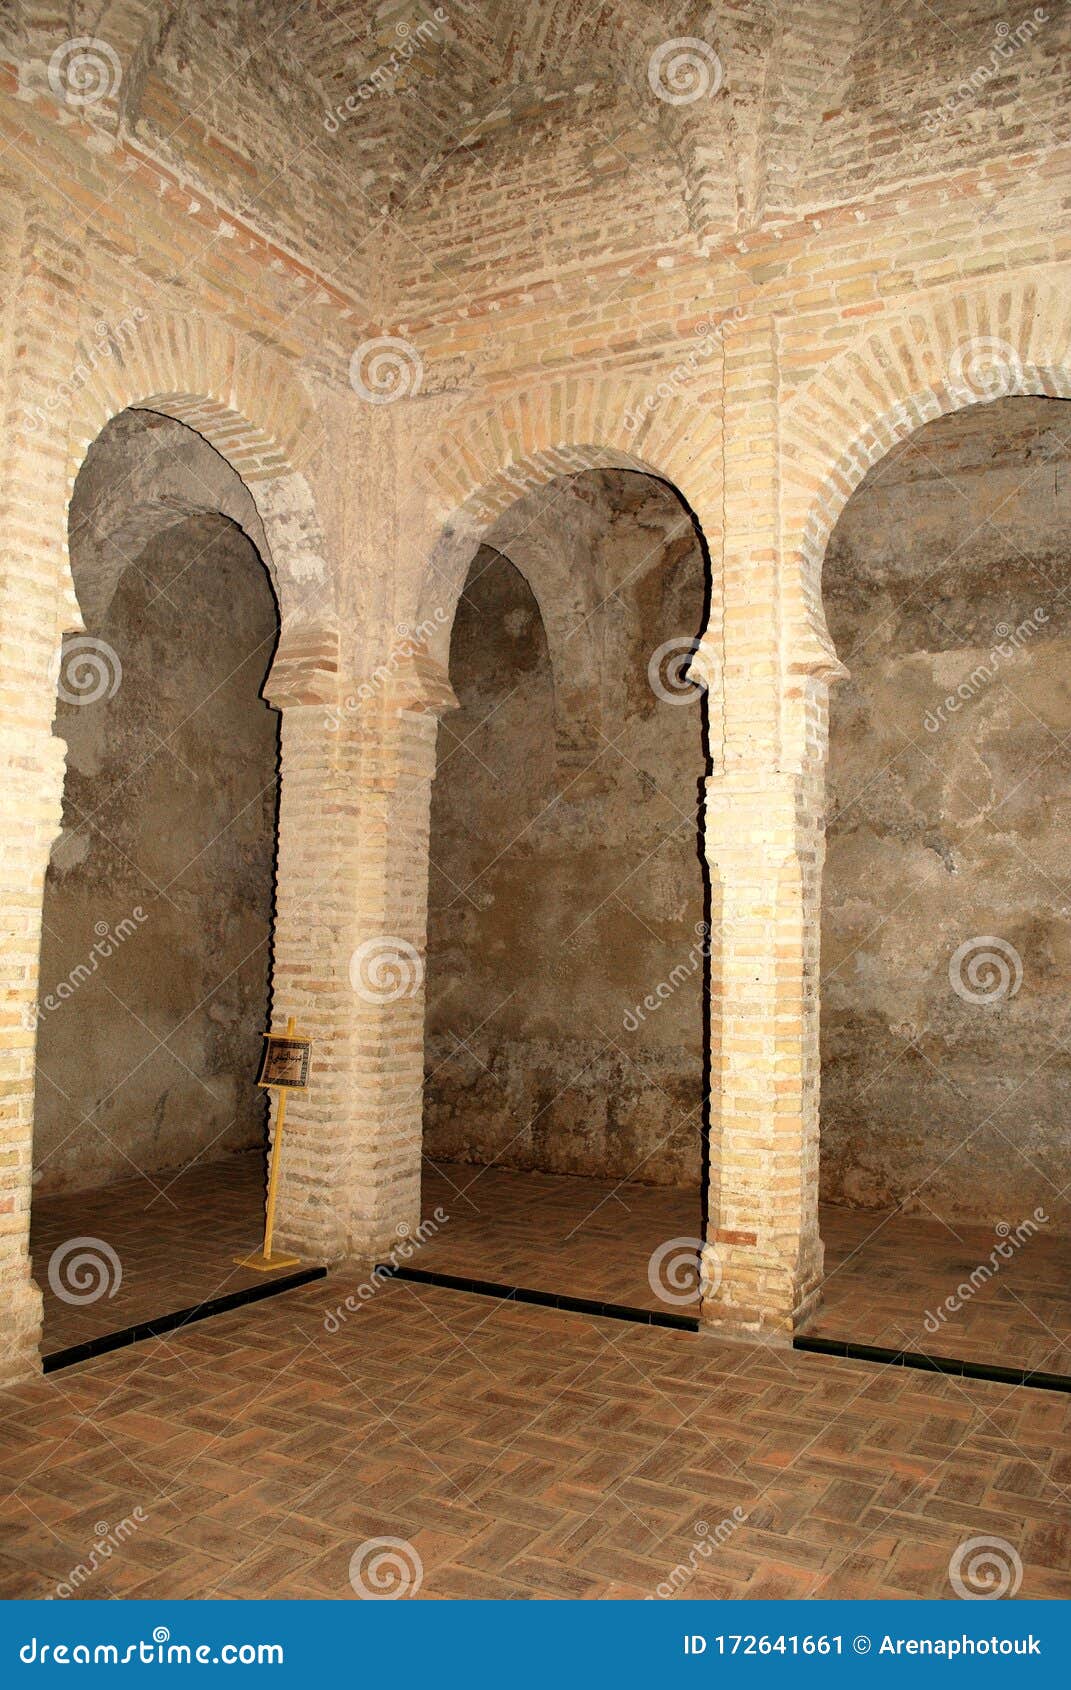 decorative columns inside the arab baths within the castle grounds, jerez de la frontera, spain.